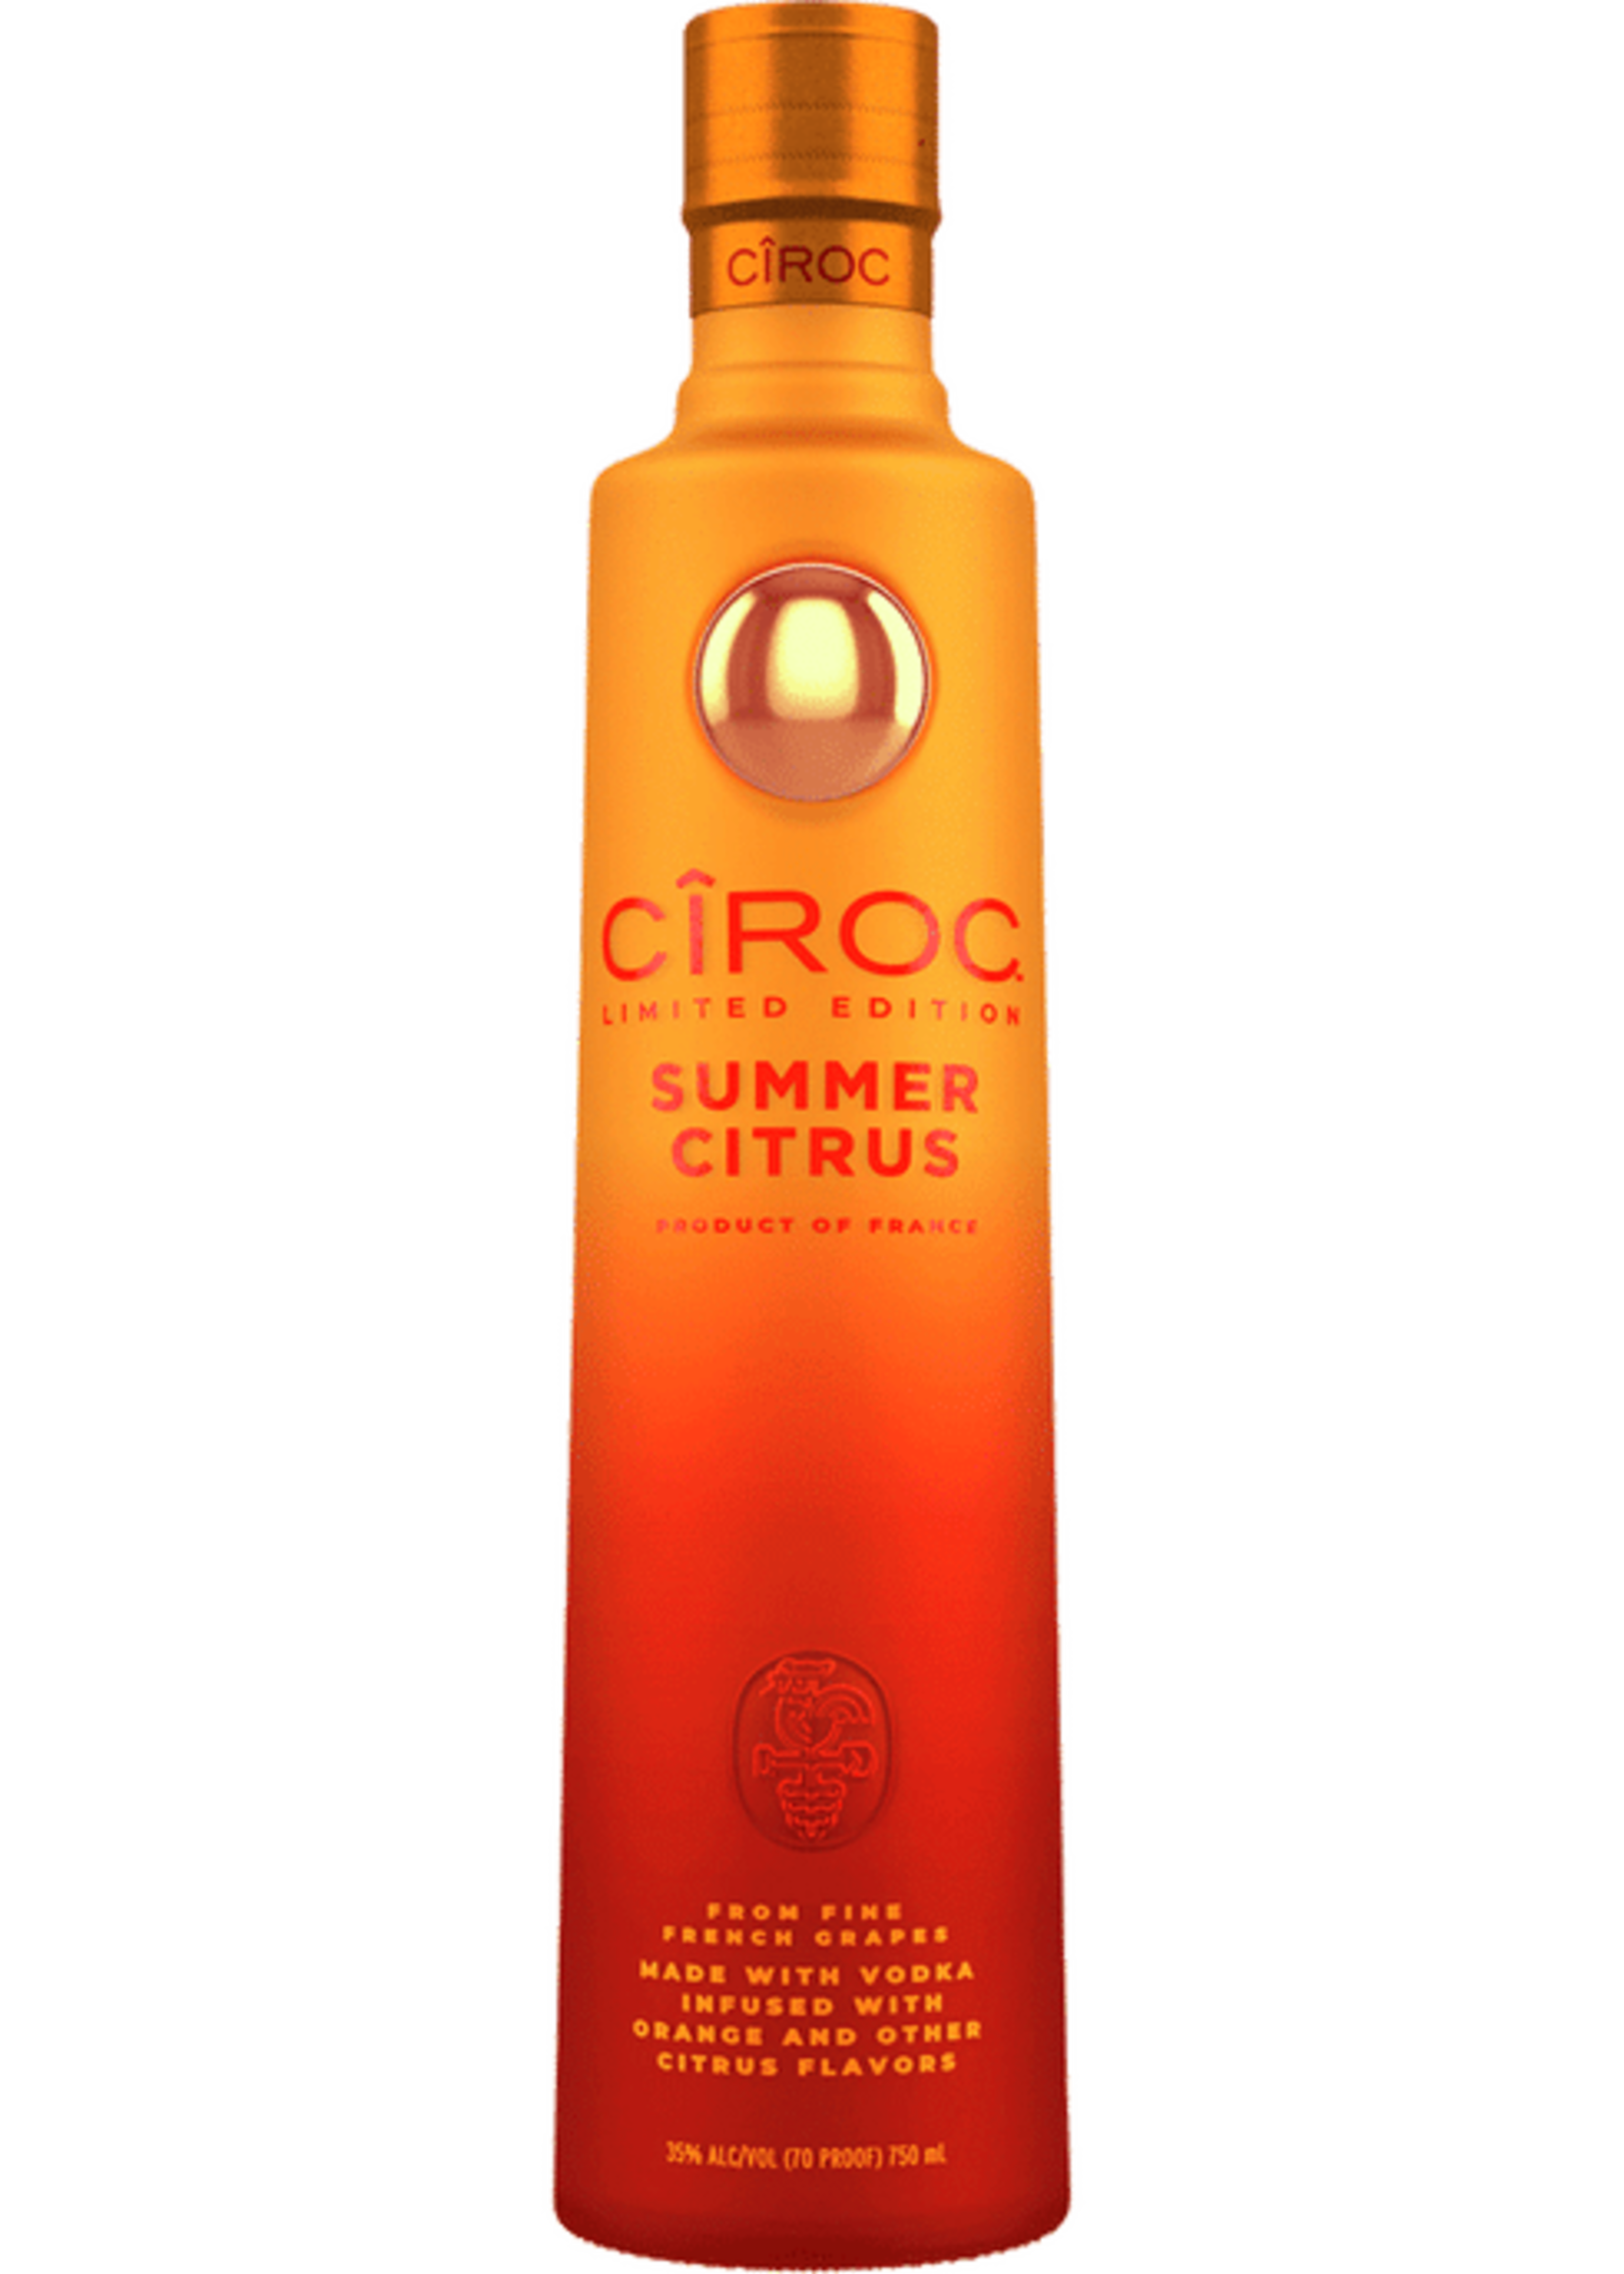 Ciroc Vodka Ciroc Summer Citrus Vodka 70Proof 750ml